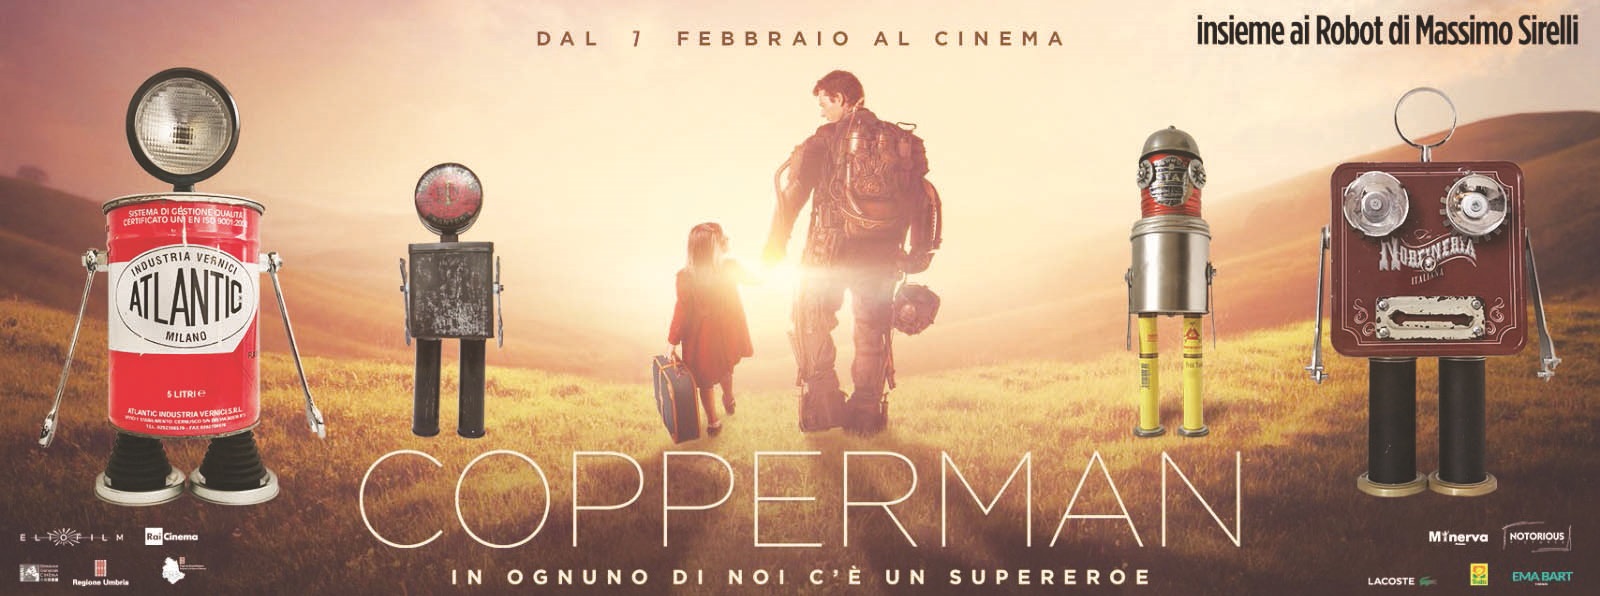 La locandina del film “Copperman” con alcuni dei robot di Sirelli..jpg